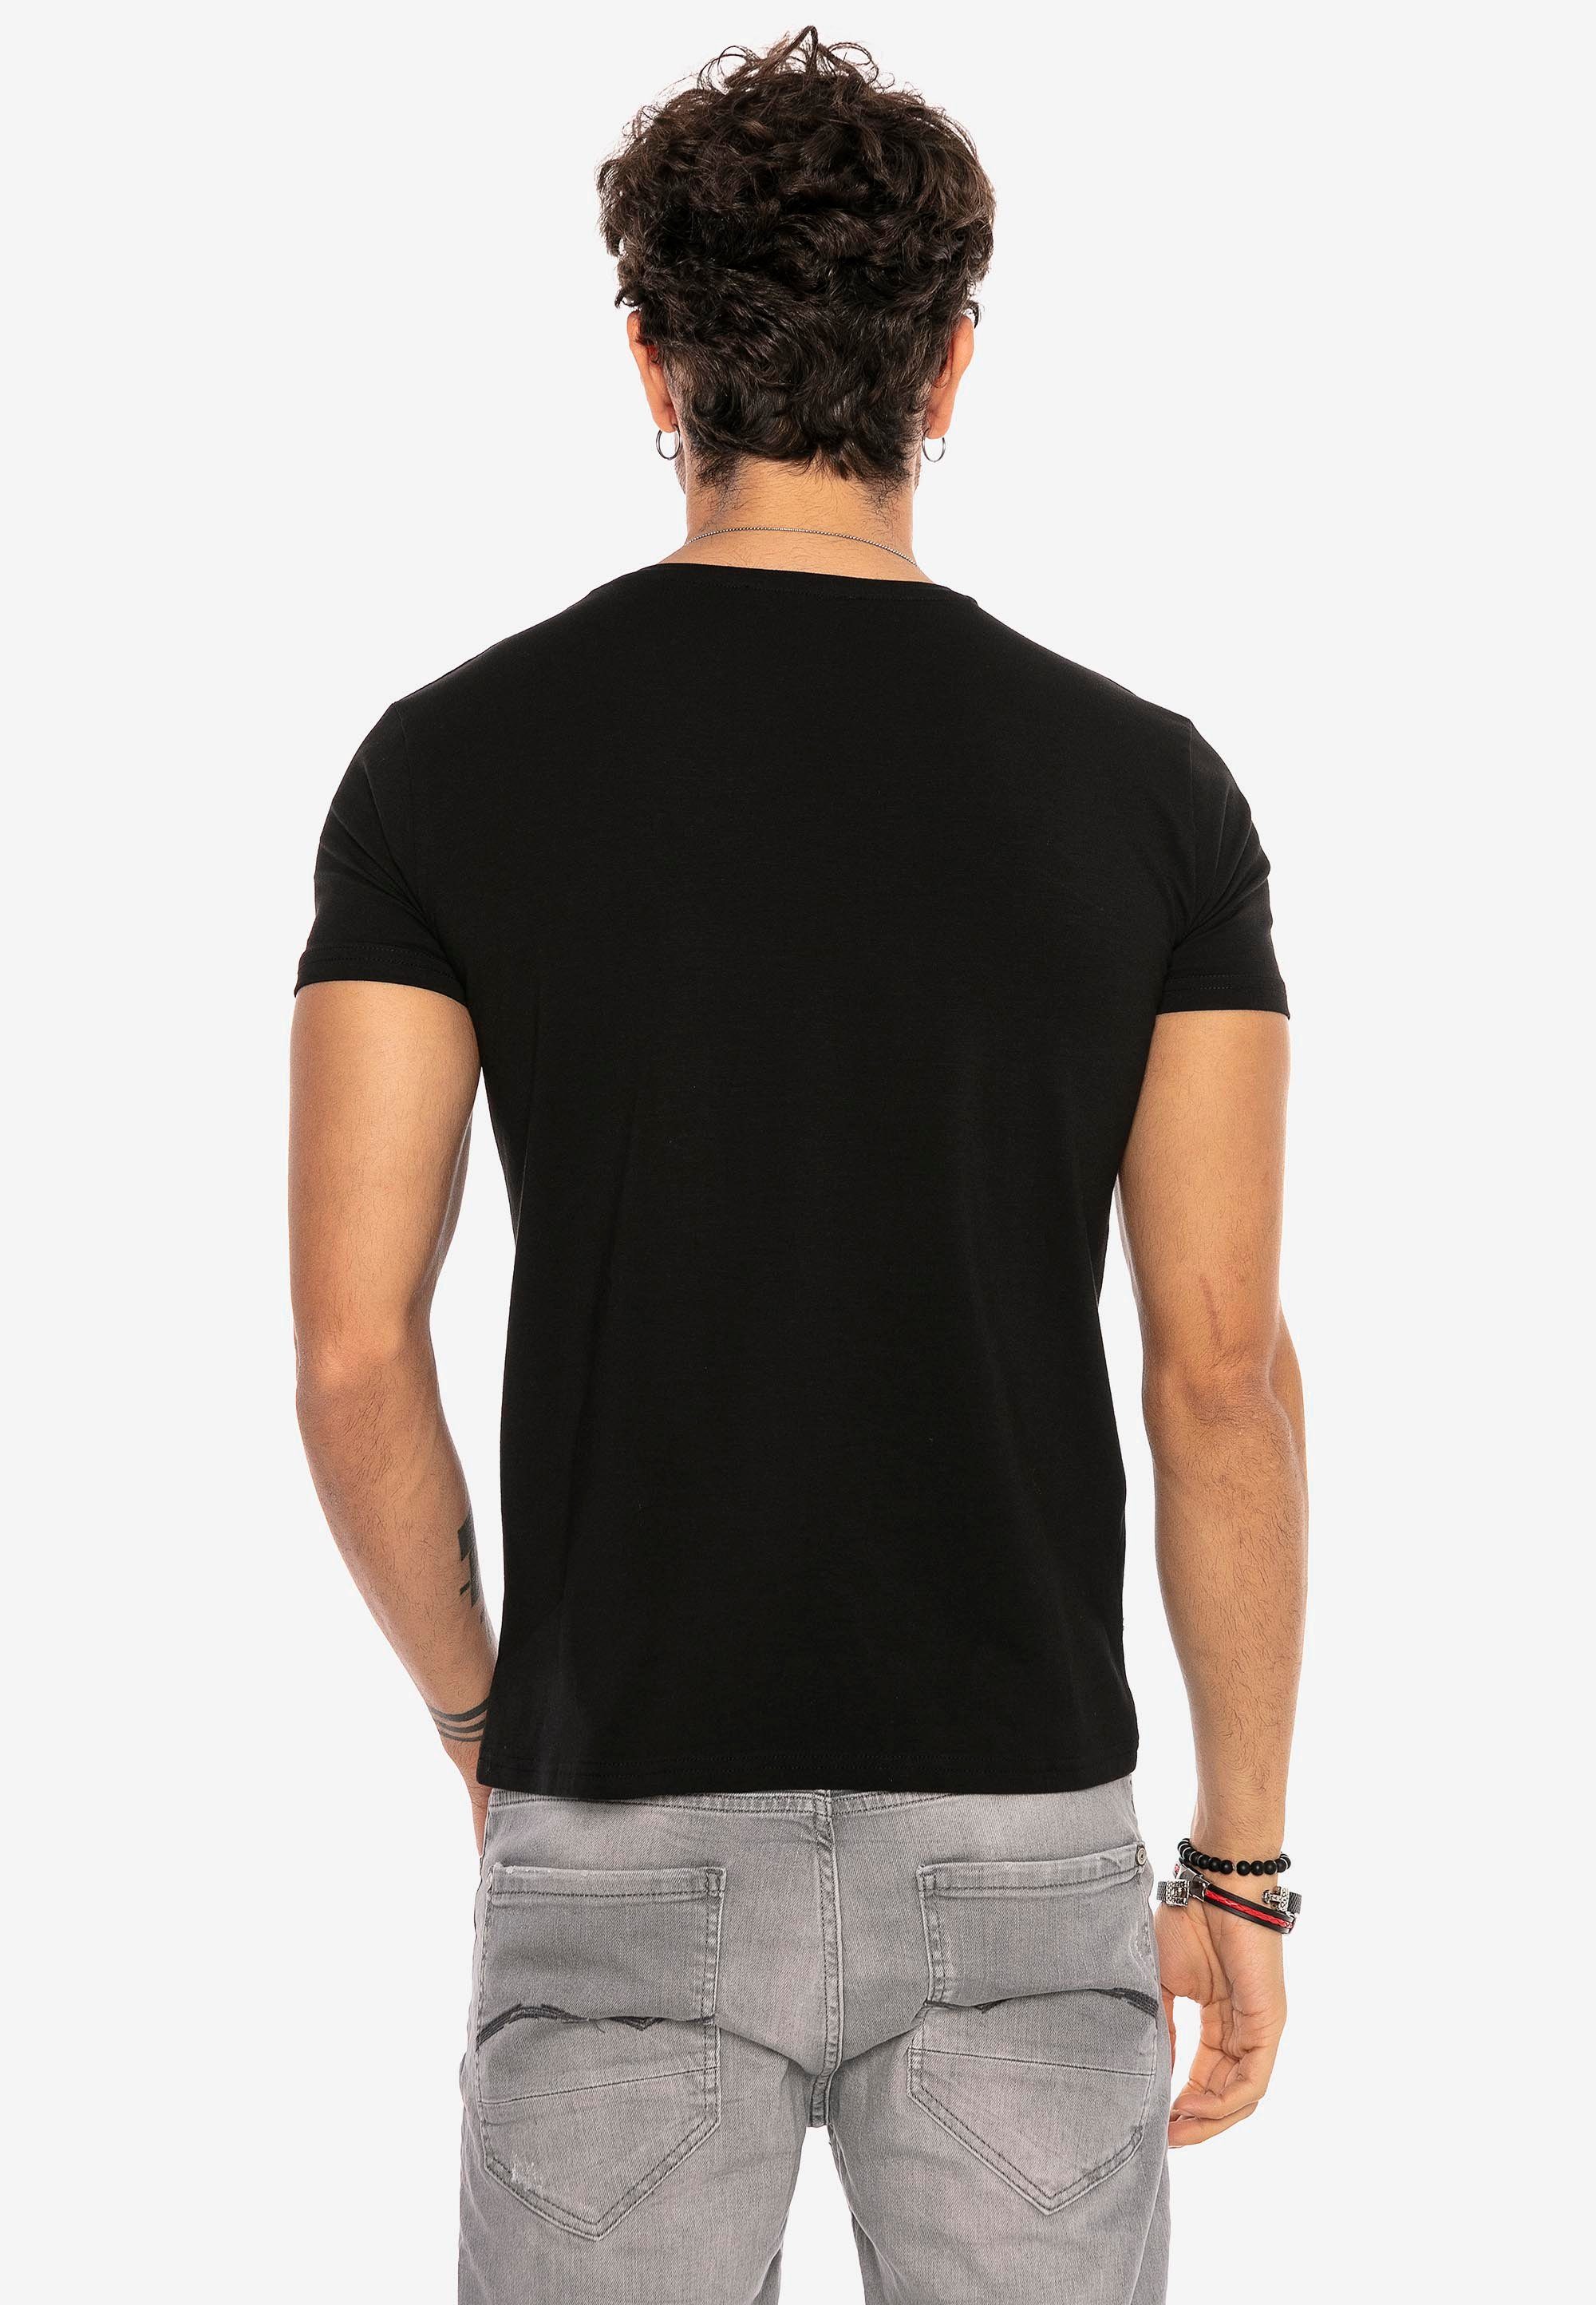 Dayton RedBridge T-Shirt in schwarz klassischem Design